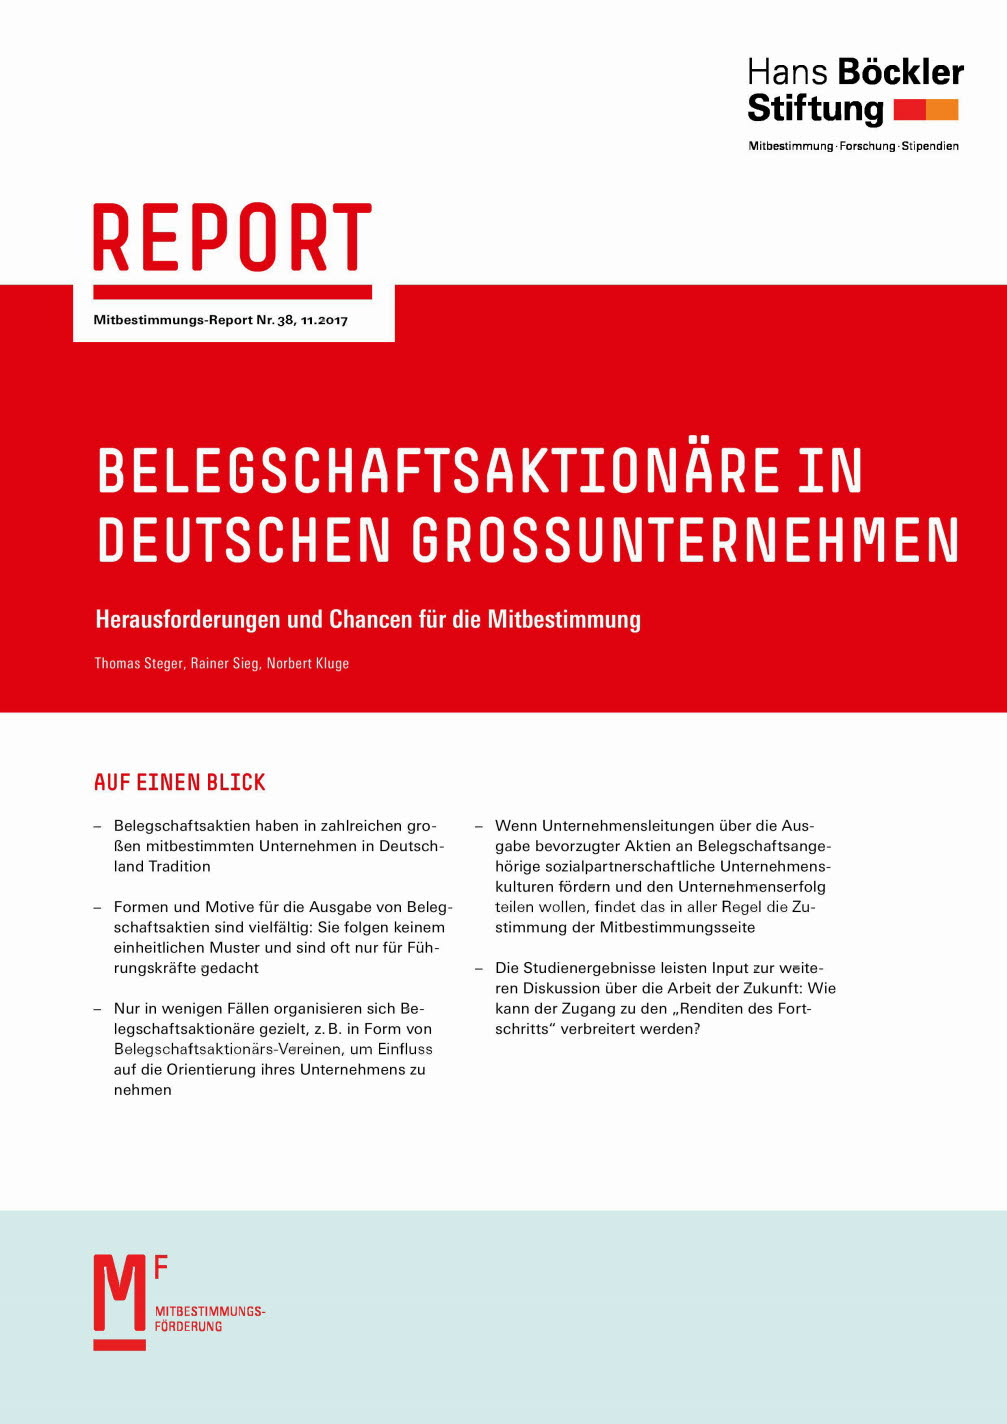 Belegschaftsaktionäre in deutschen Grossunternehmen